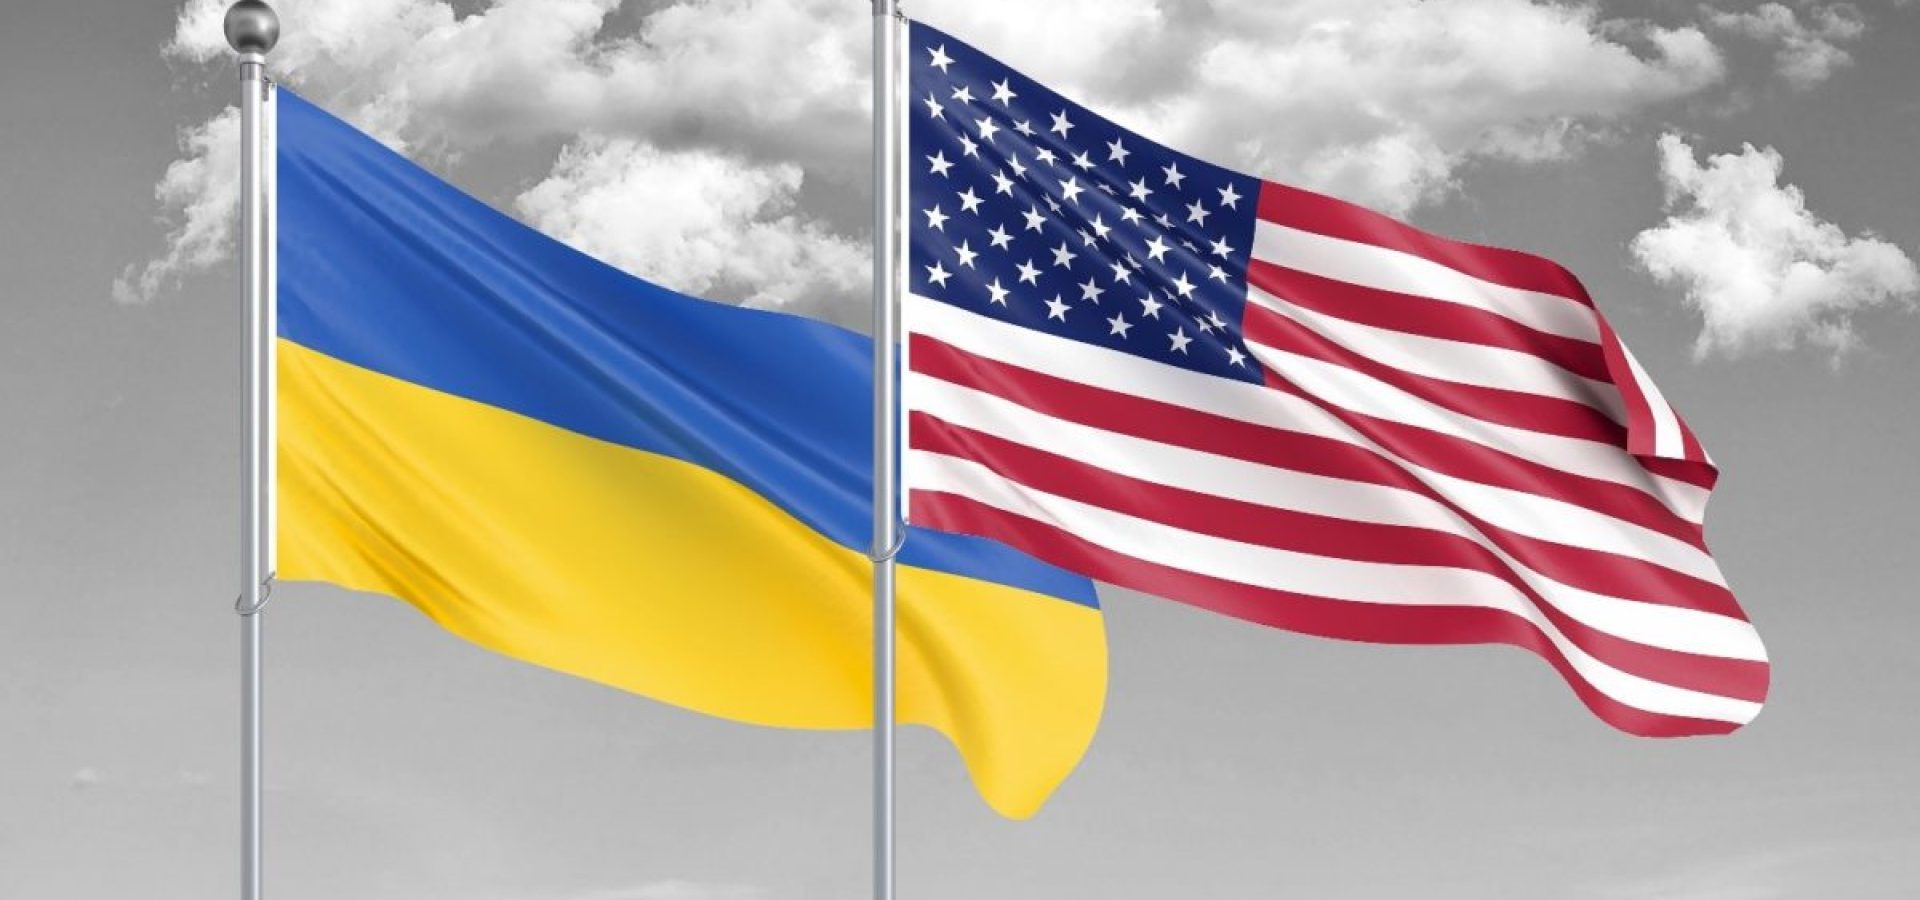 ukraine and U.S.